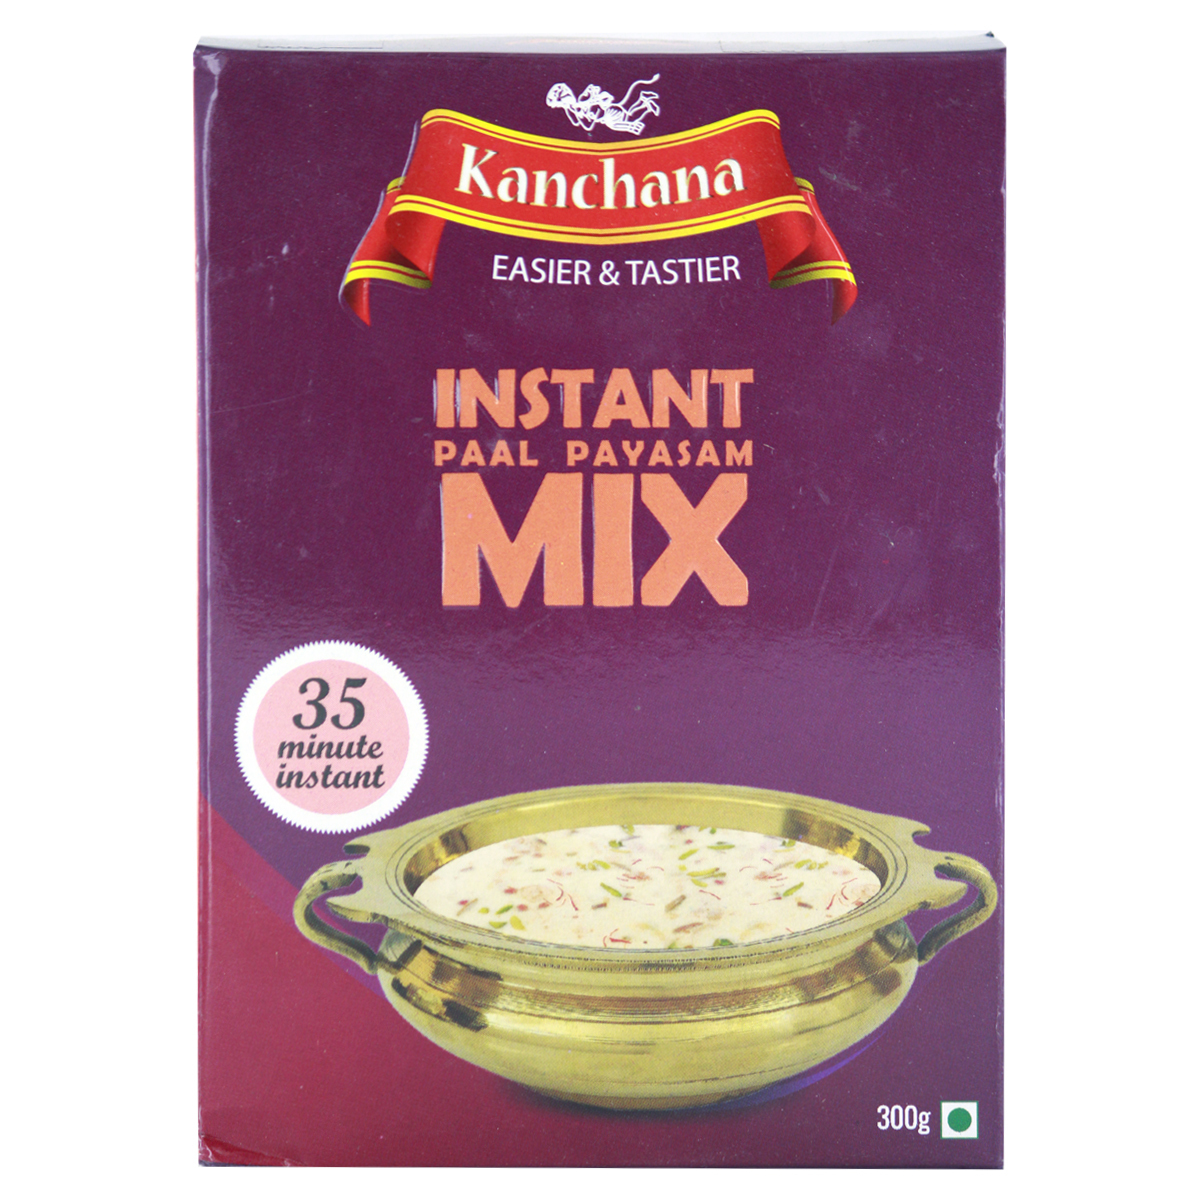 Kanchana Instant Paal Payasam Mix 300g